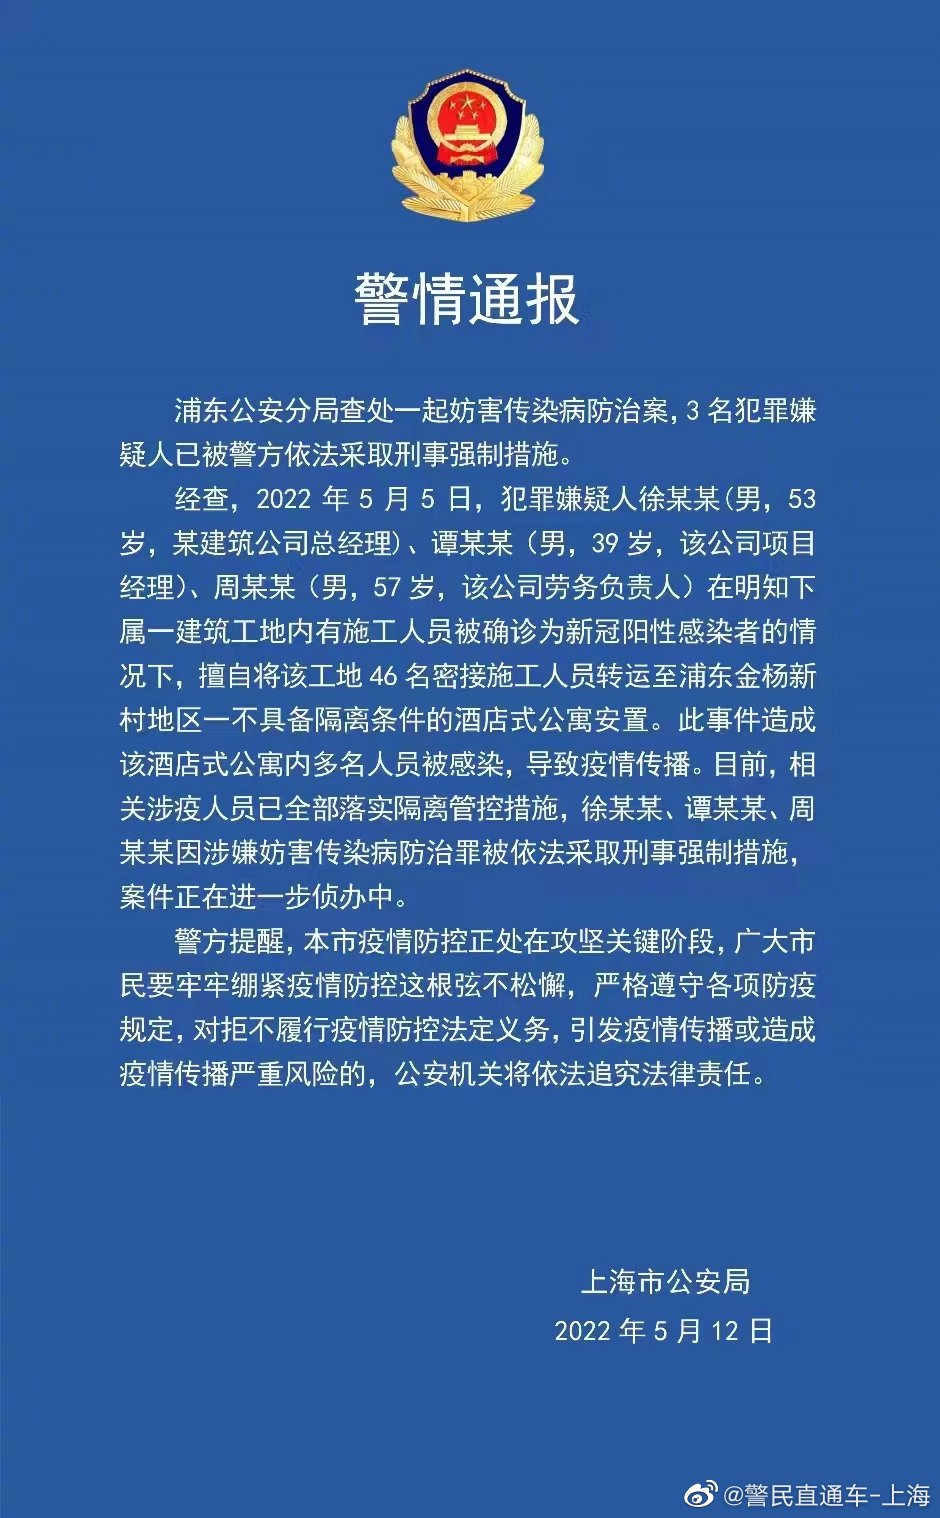 上海浦东公安分局查处一起妨害传染病防治案 3名犯罪嫌疑人被采取刑事强制措施